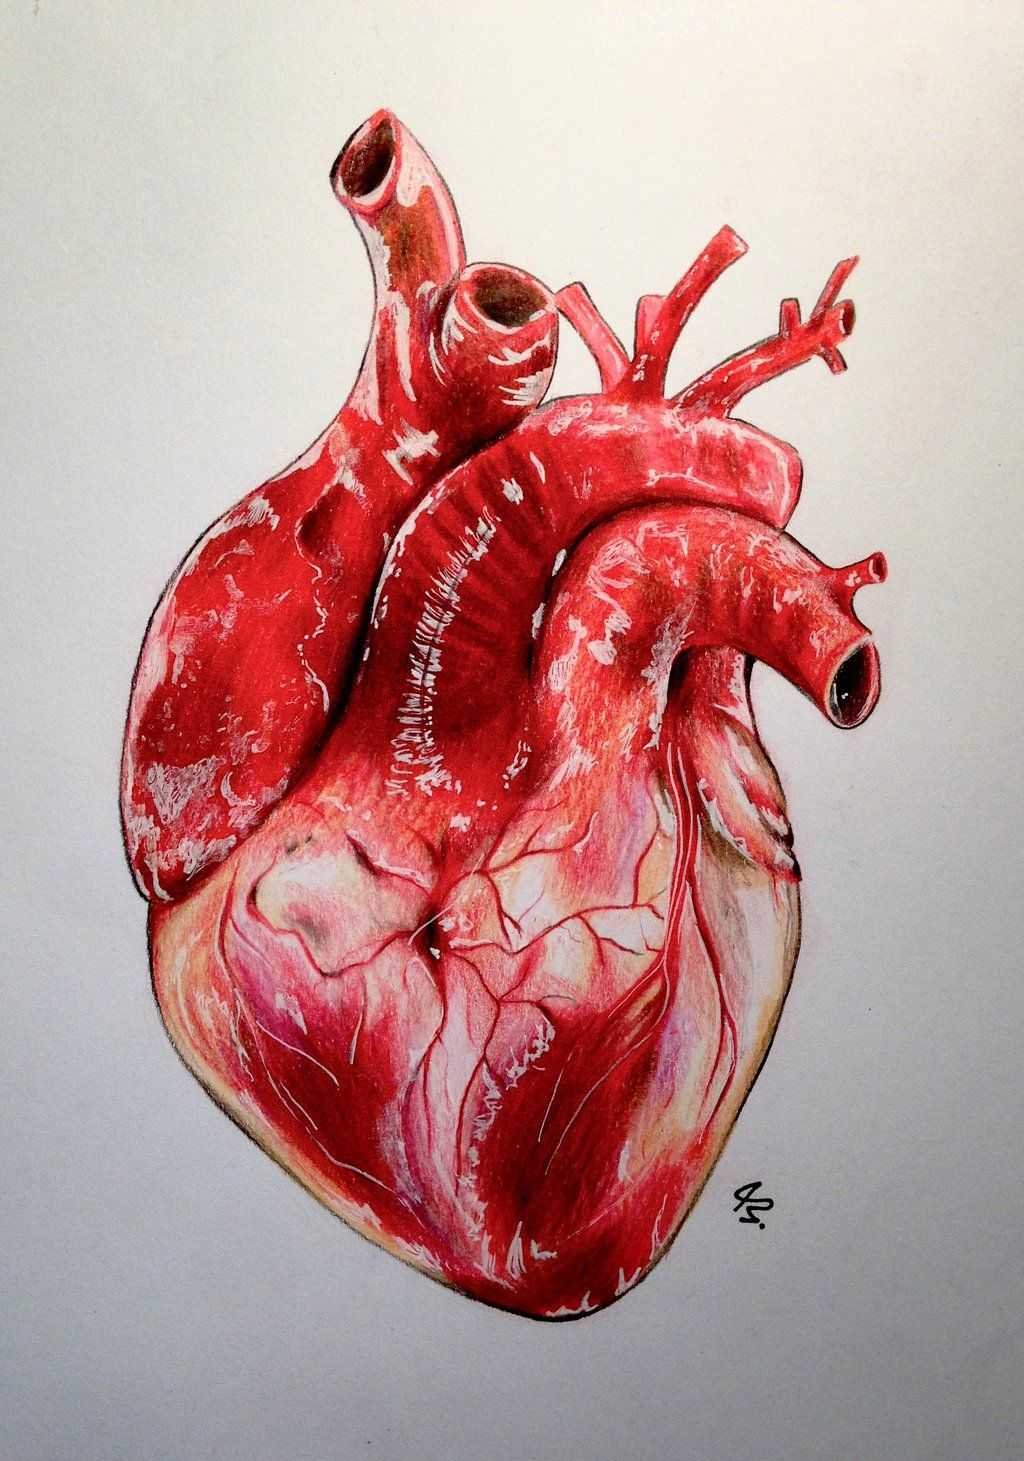 Фото Сердце человека, более 90 качественных бесплатных стоковых фото